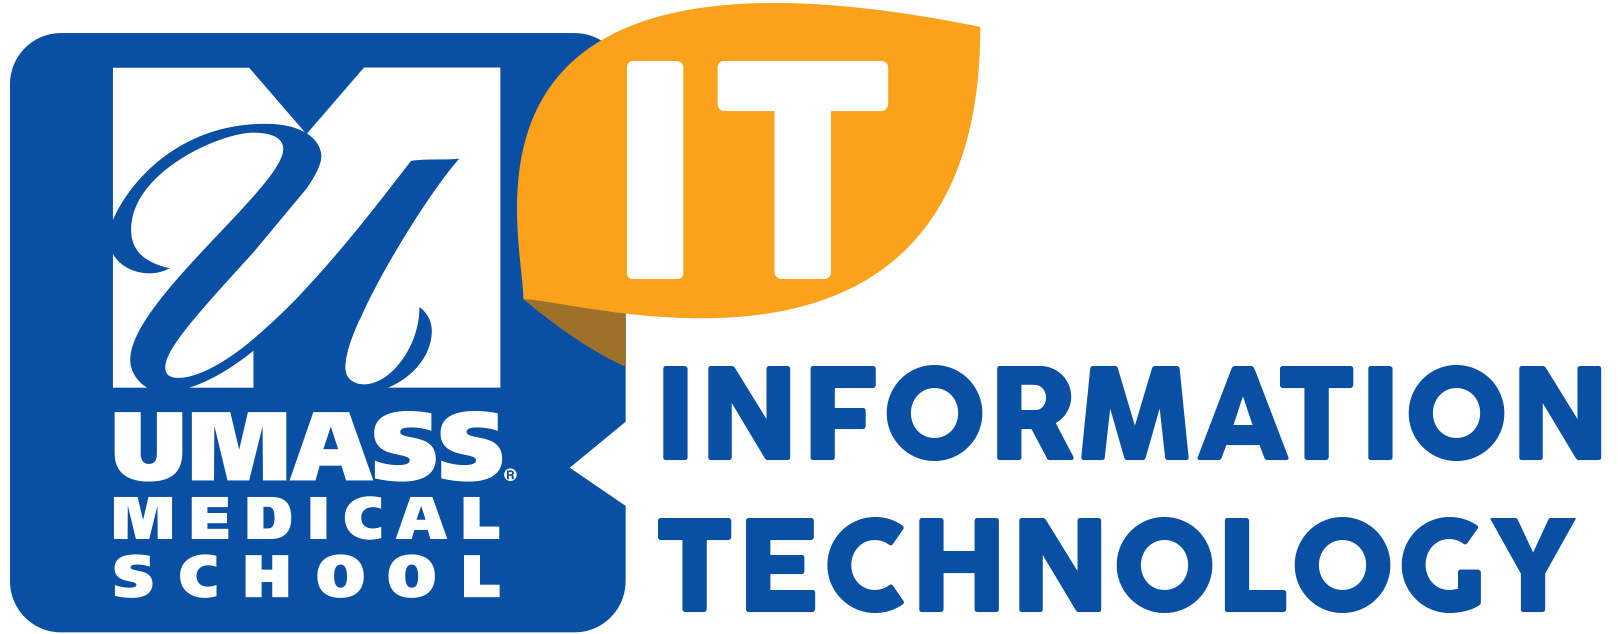 Information Technology Logo - UMass Medical School Technology Department